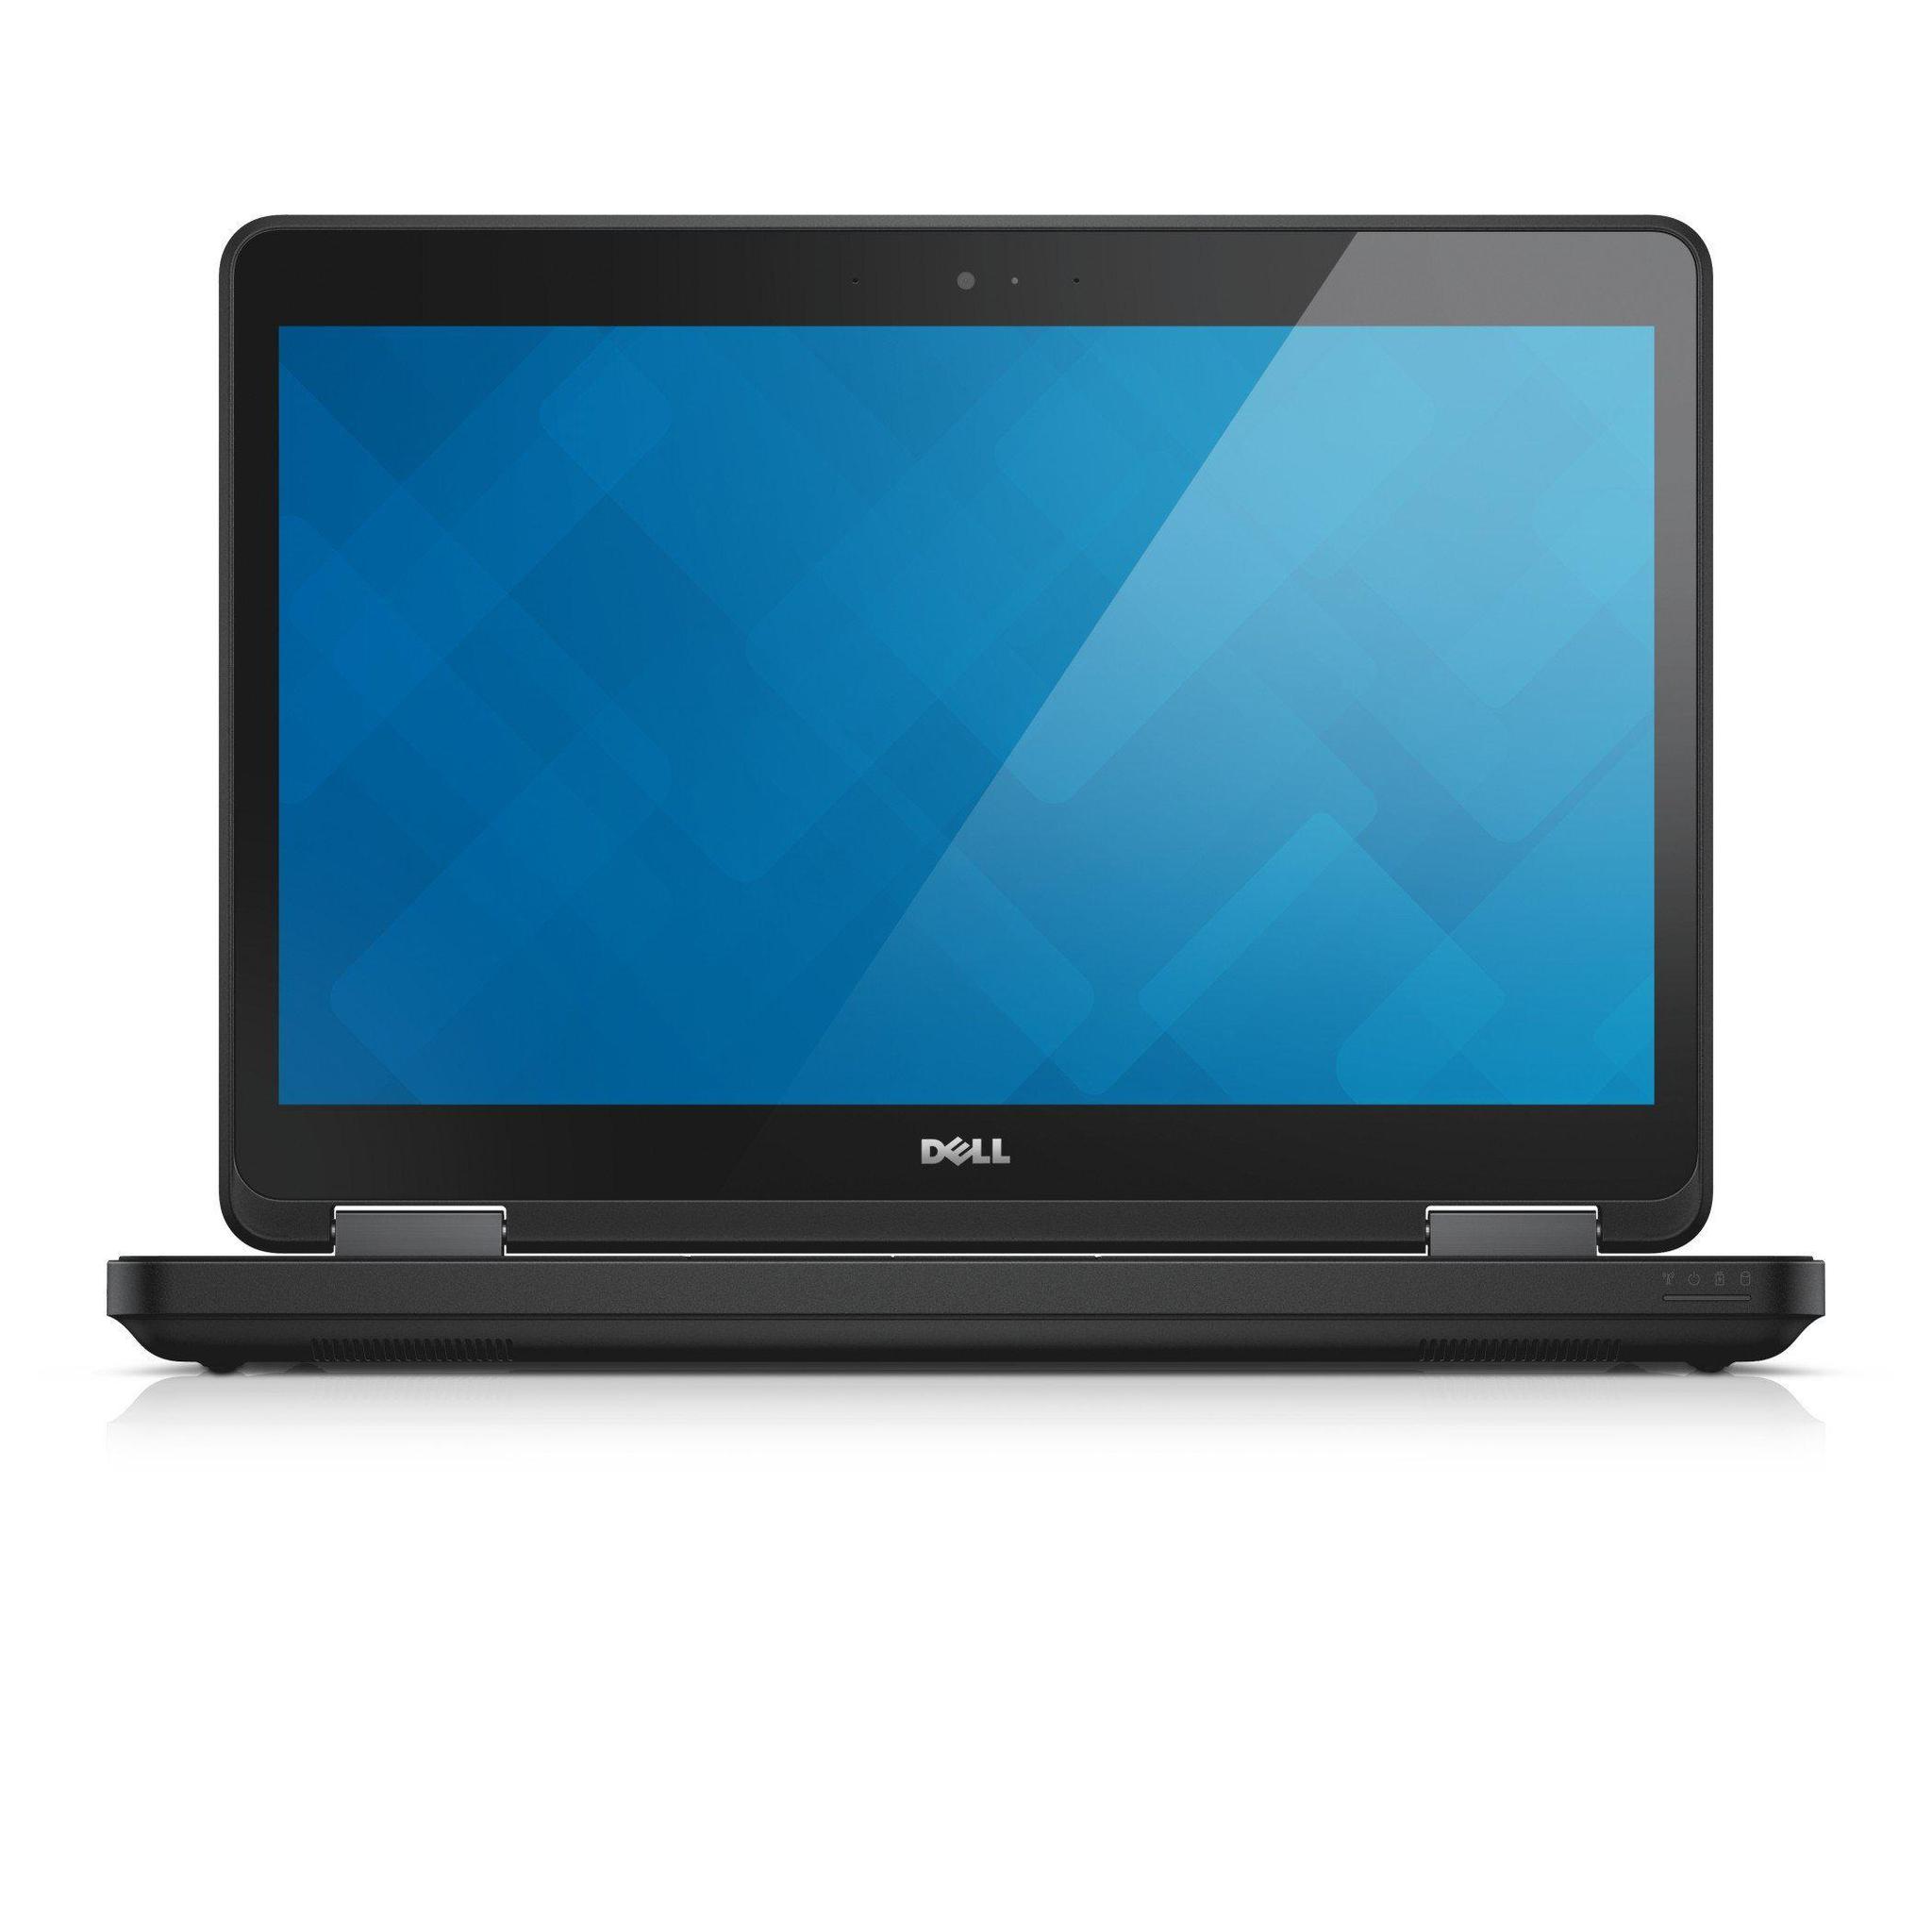 Dell Latitude E5540 15.6" Laptop, Intel Core i5-4300U 1.9Ghz, 8GB 500GB, Used laptops in Dubai